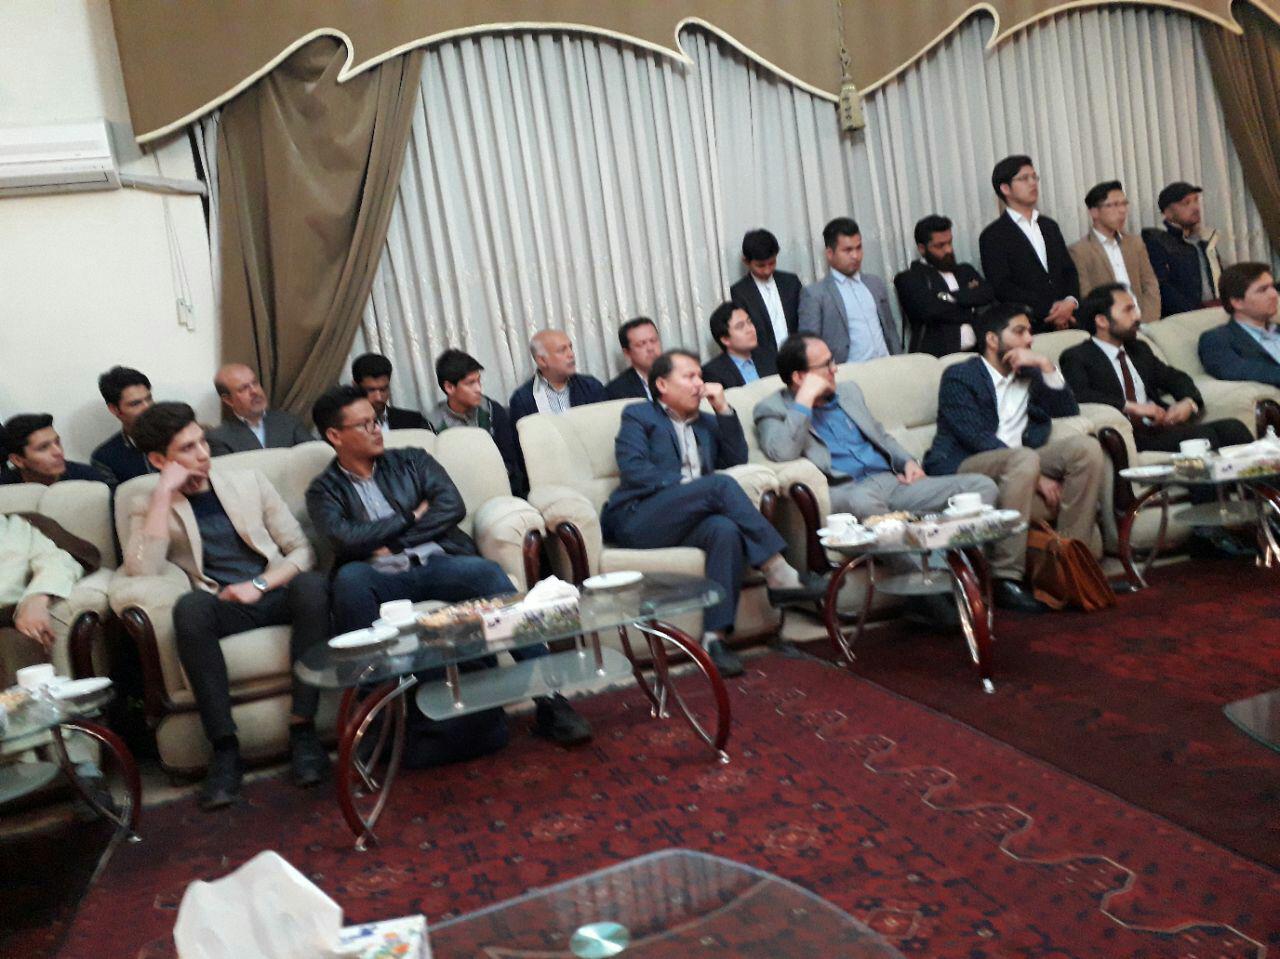 عکس از نشست روز چهارشنبه در کنسولگری  افغانستان در مشهد مقدس می باشد